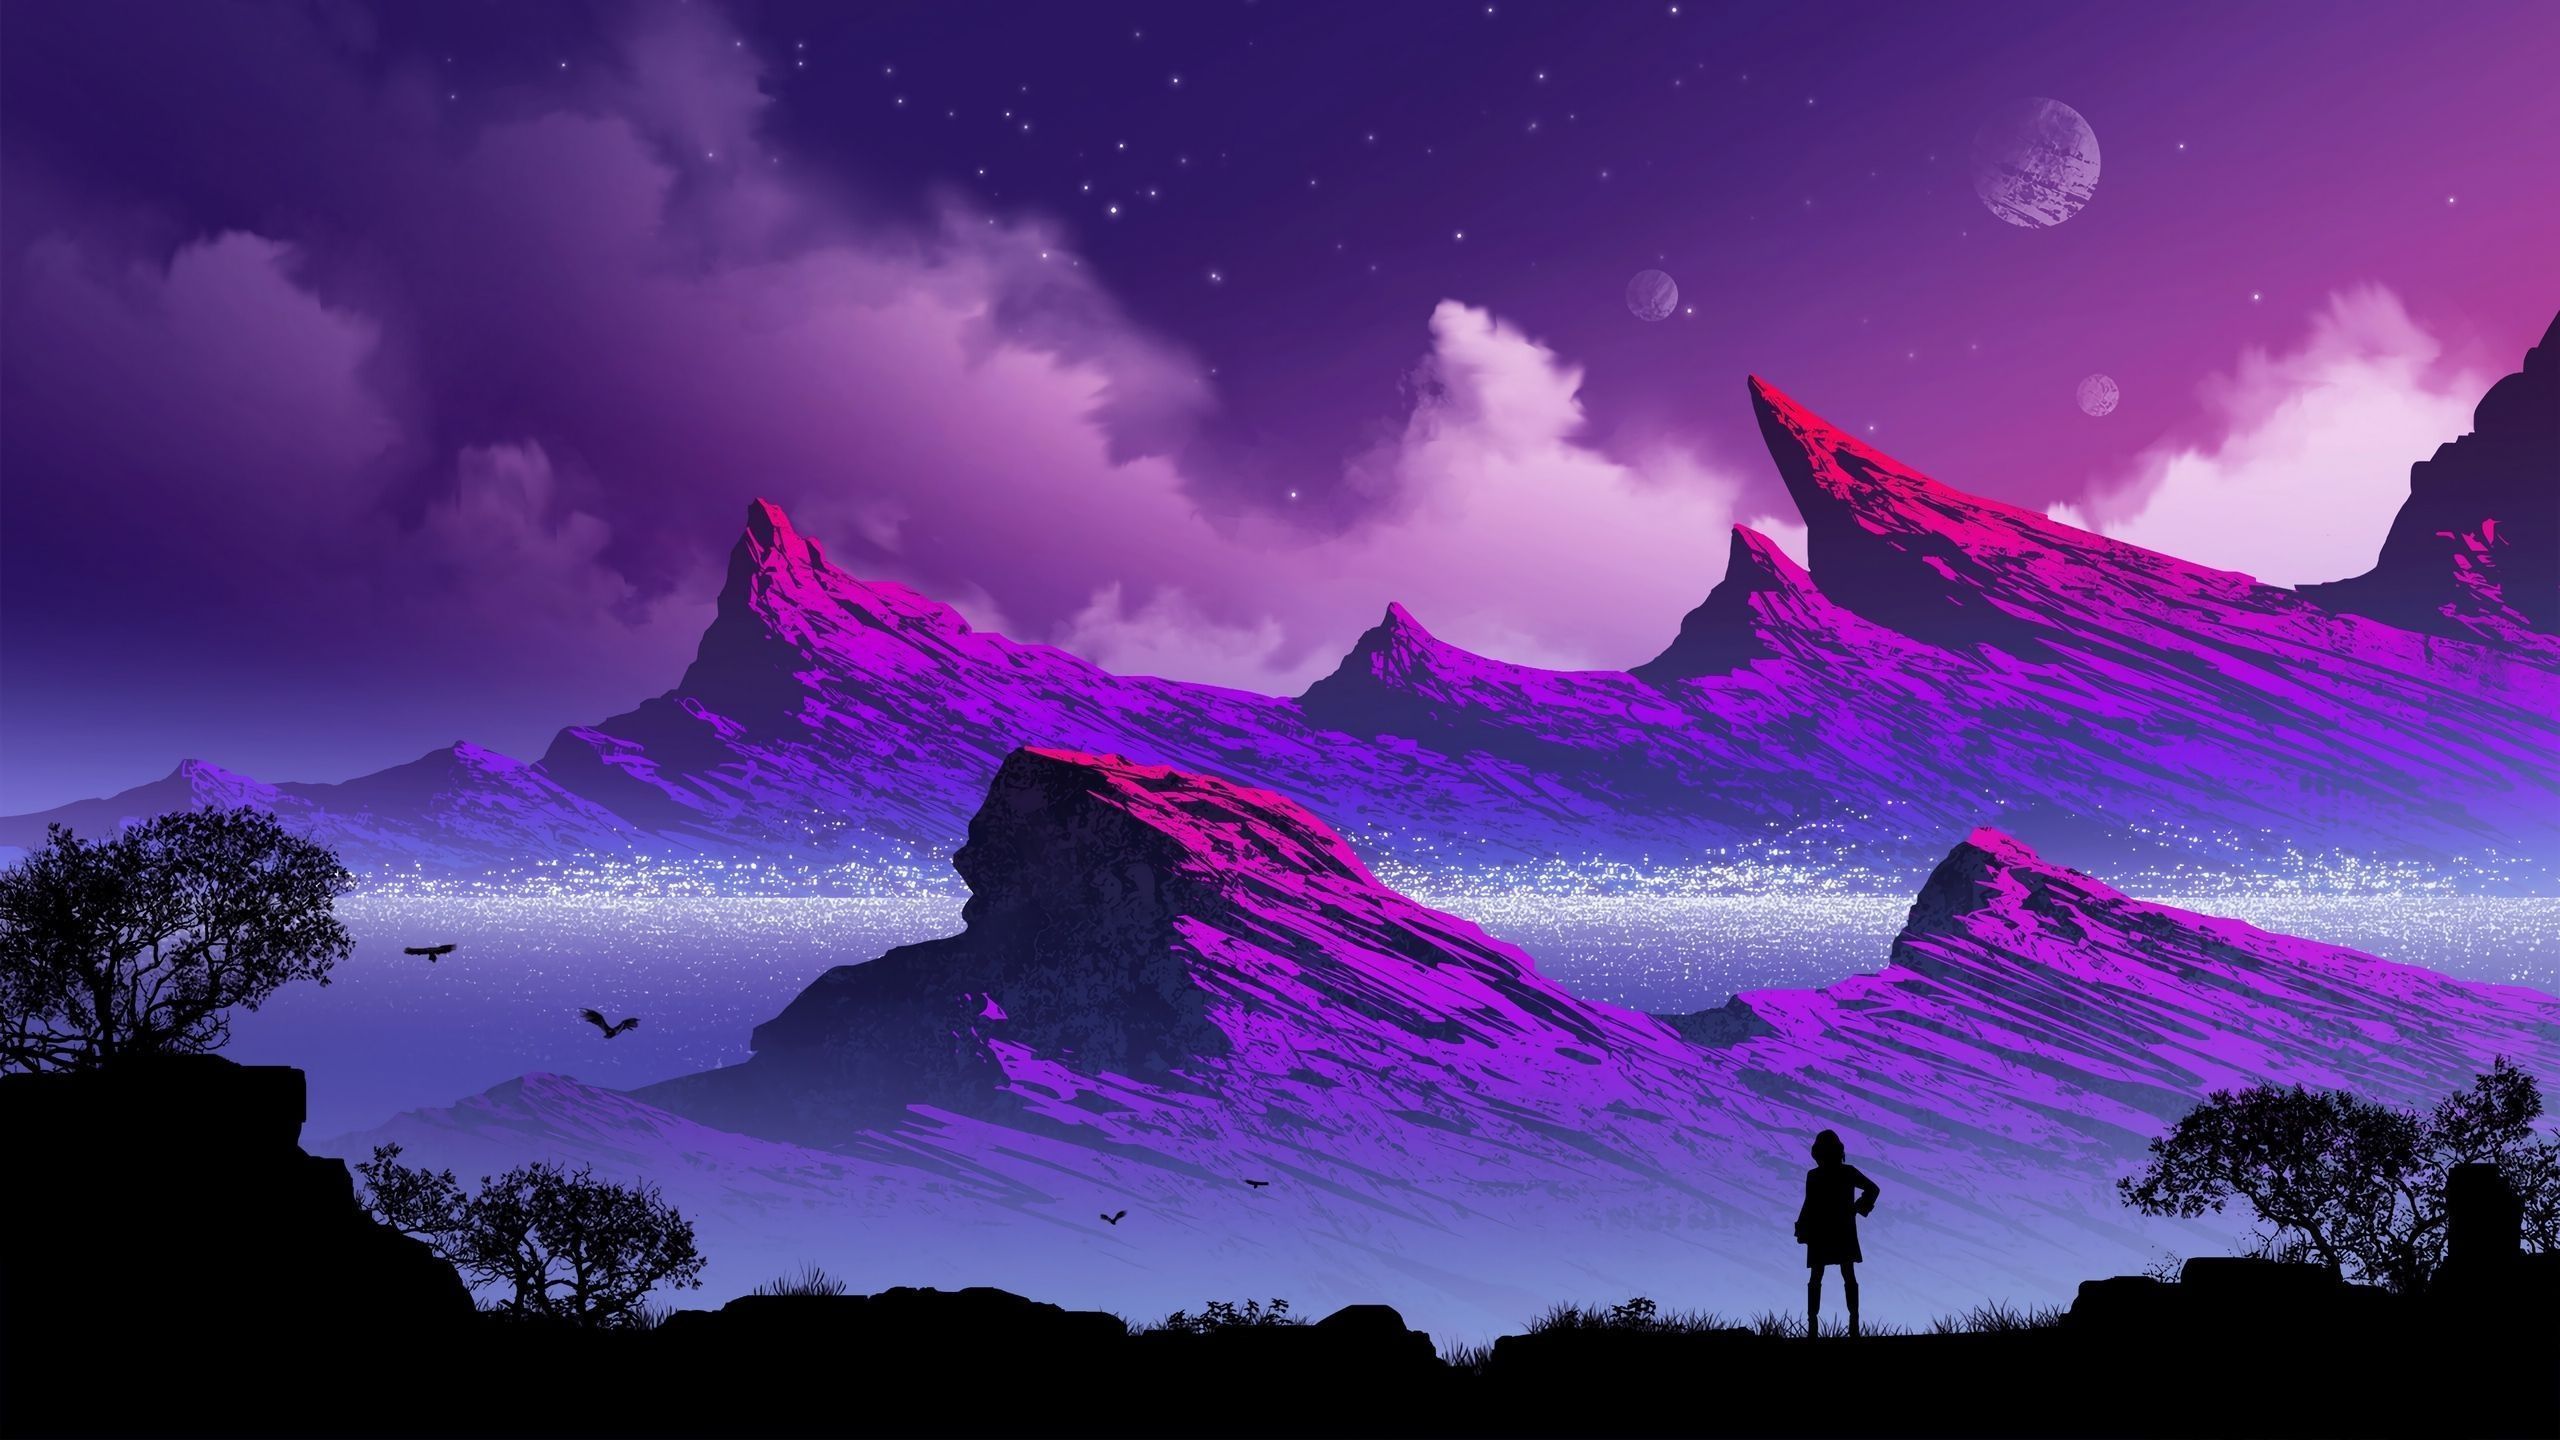 Purple mountains wallpaper 4k 12095 | wallpaper wiki | fandom powered by wikia - 2560x1440